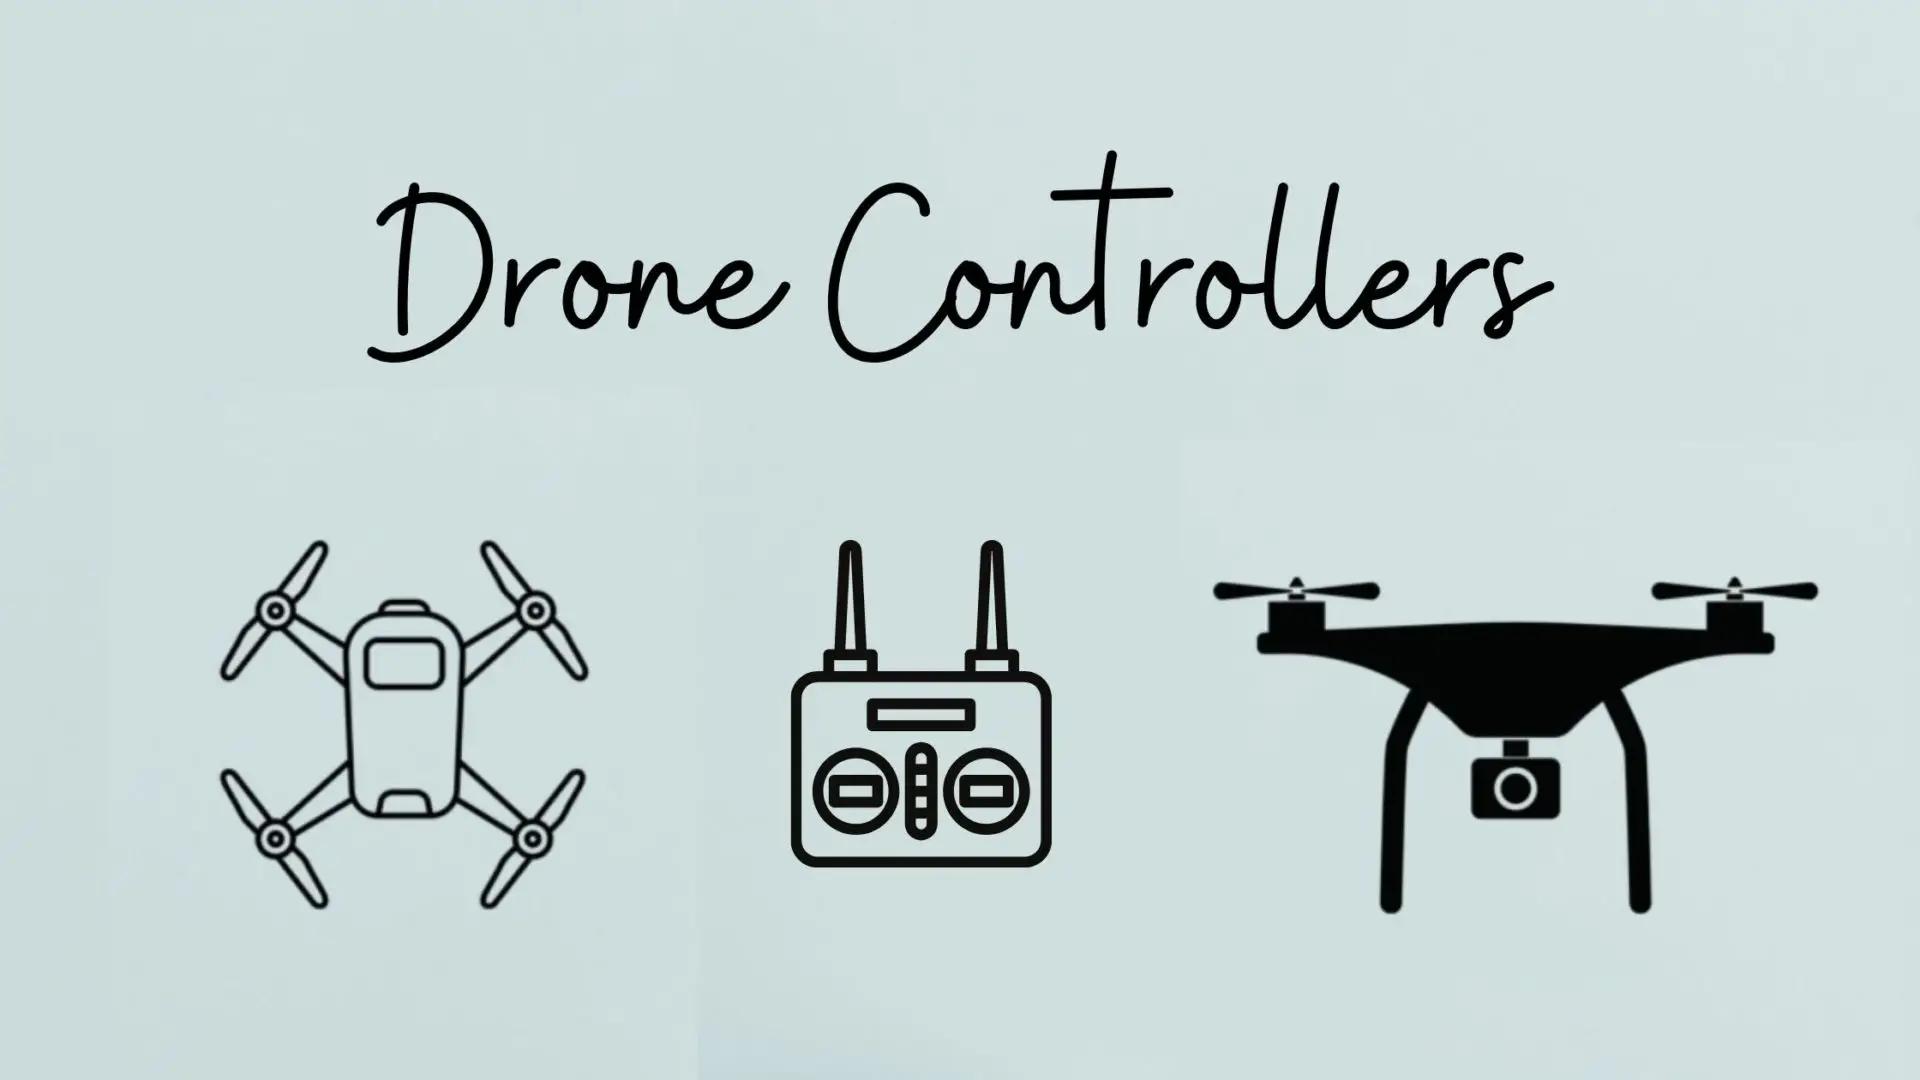 Mini drone controller